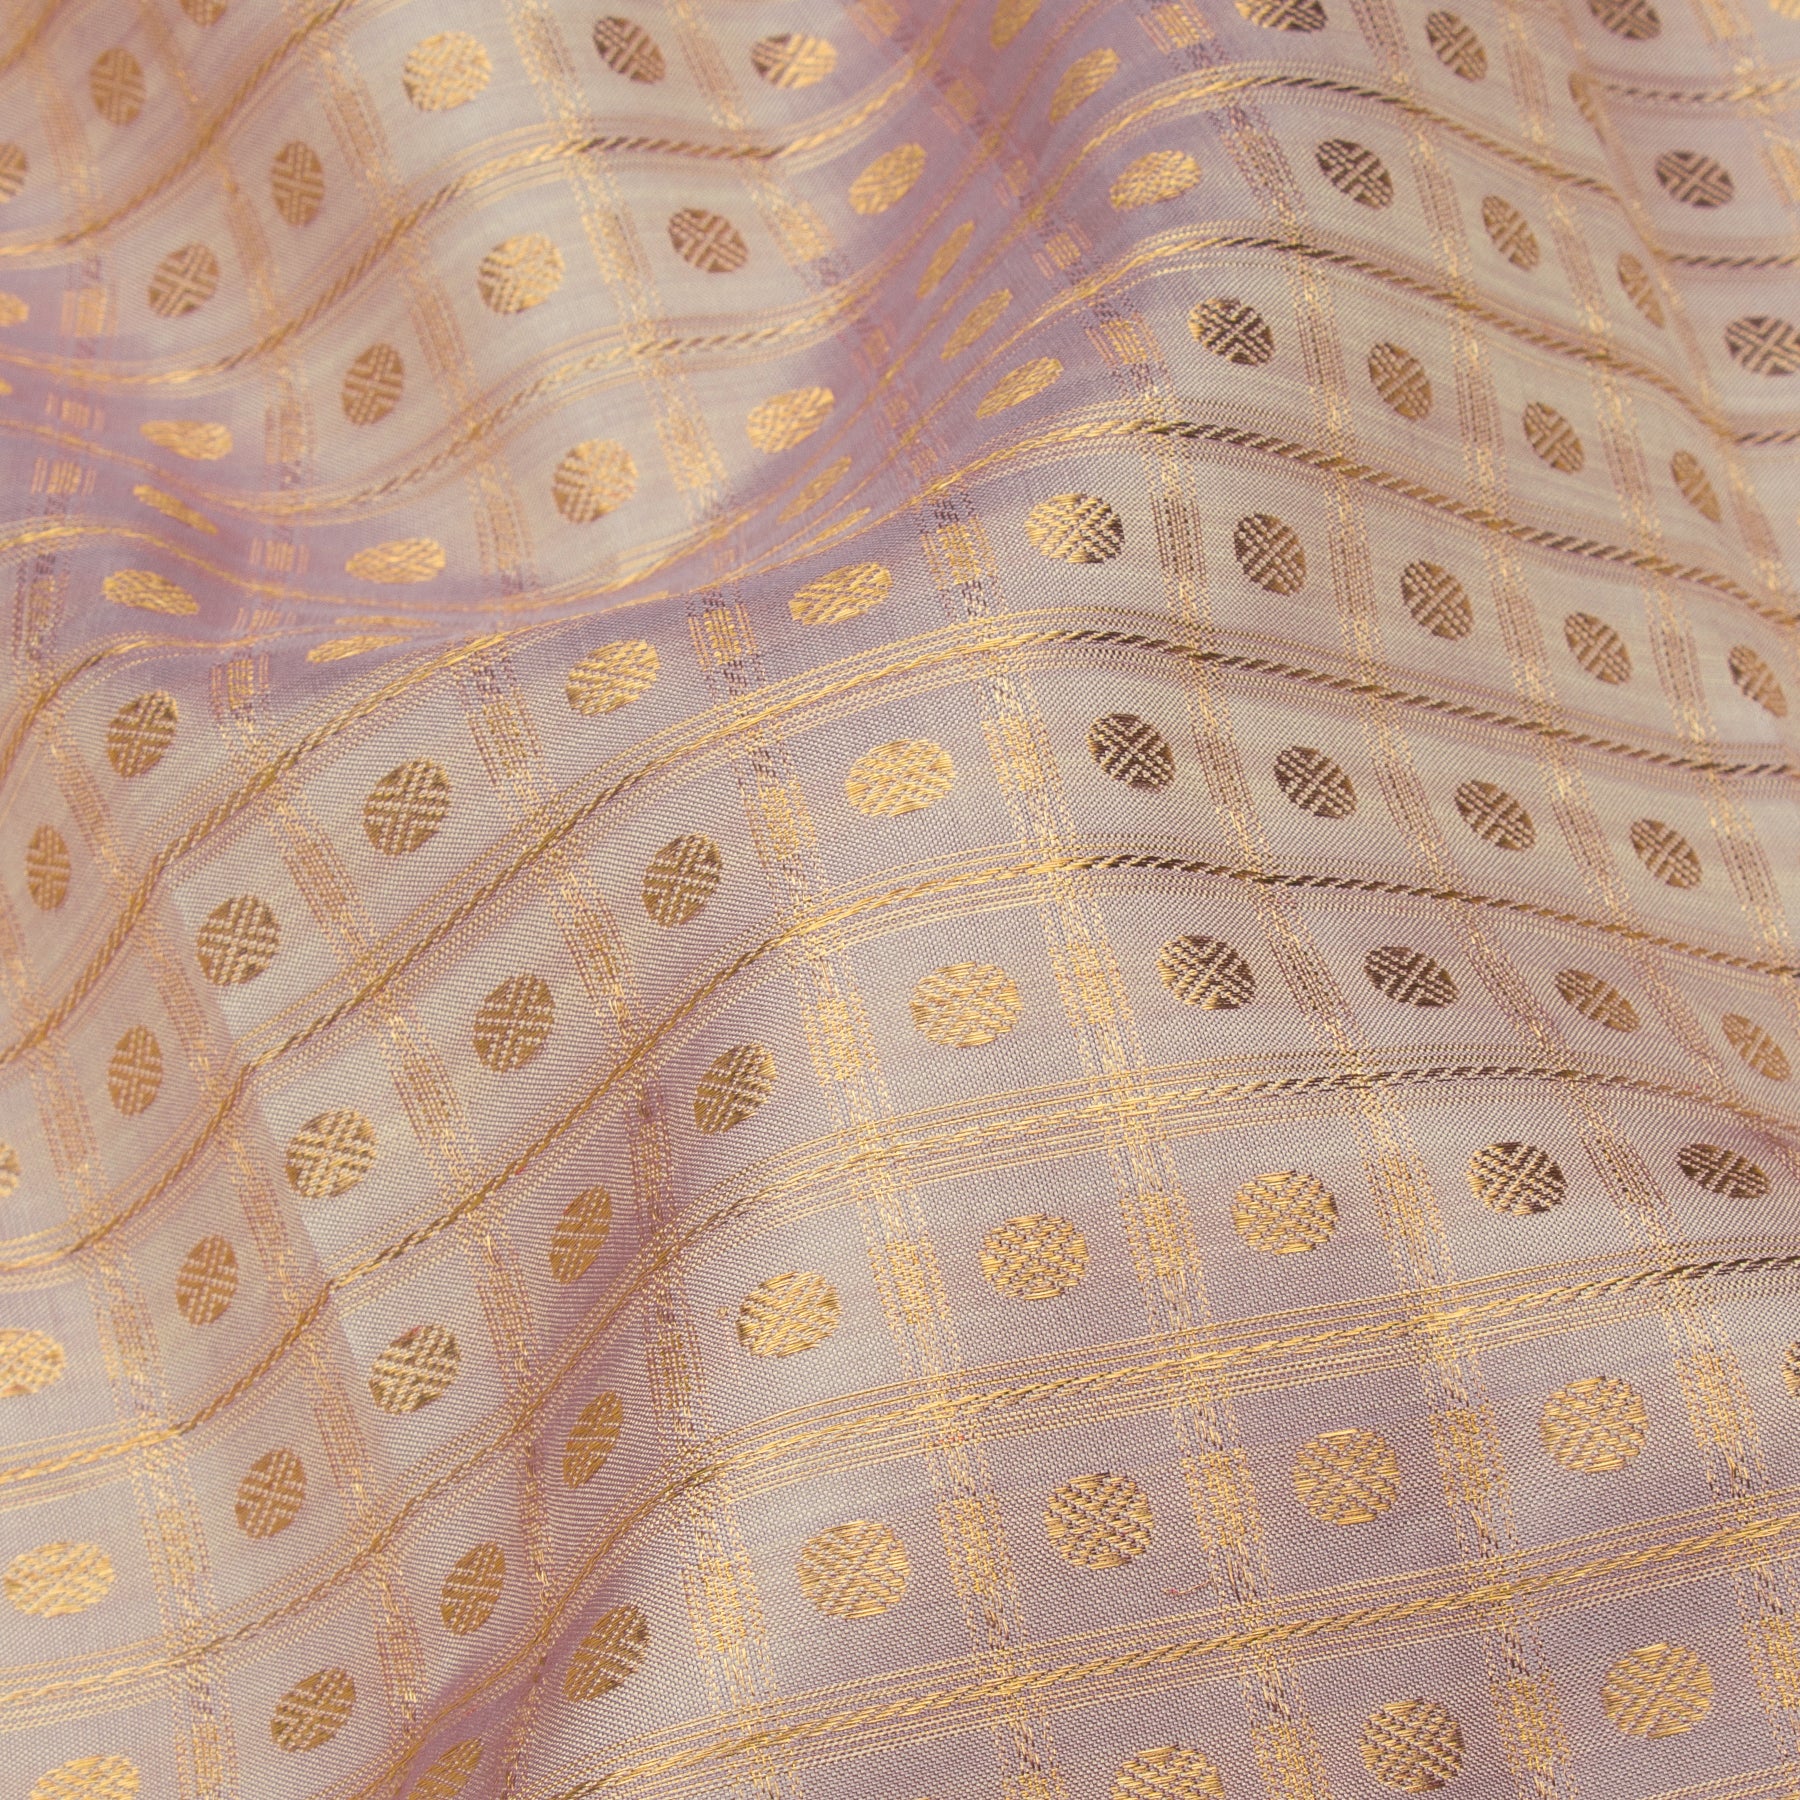 Kanakavalli Kanjivaram Silk Sari 23-041-HS001-11575 - Fabric View